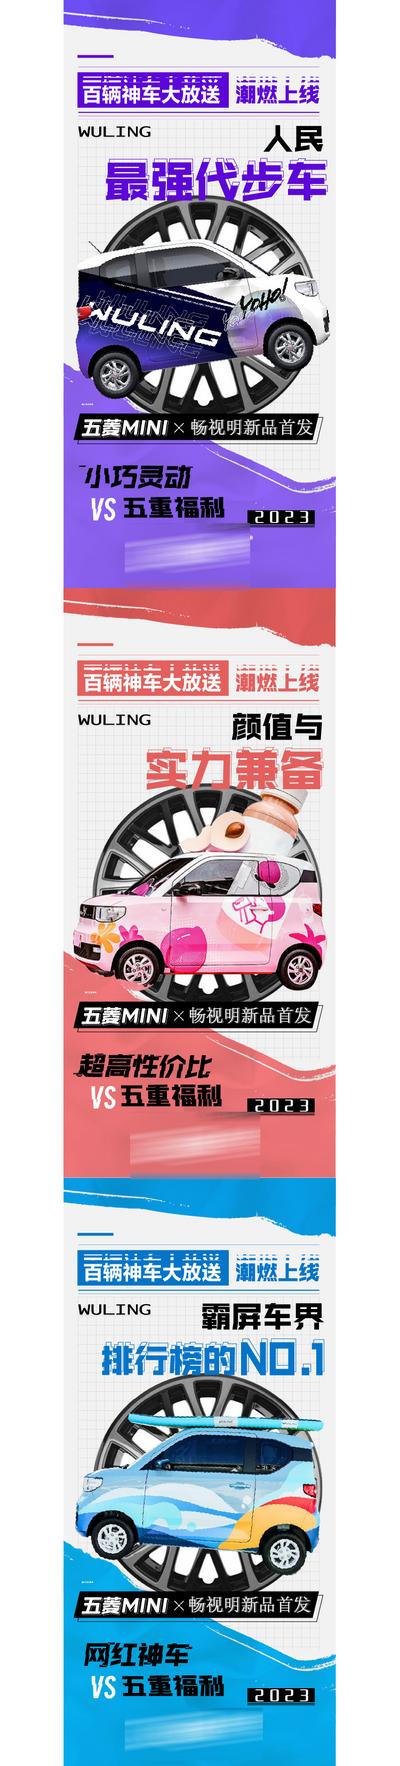 南门网 广告 海报 活动 汽车 热销 送车 五菱宏光 迷你系列 宏光mini 马卡龙